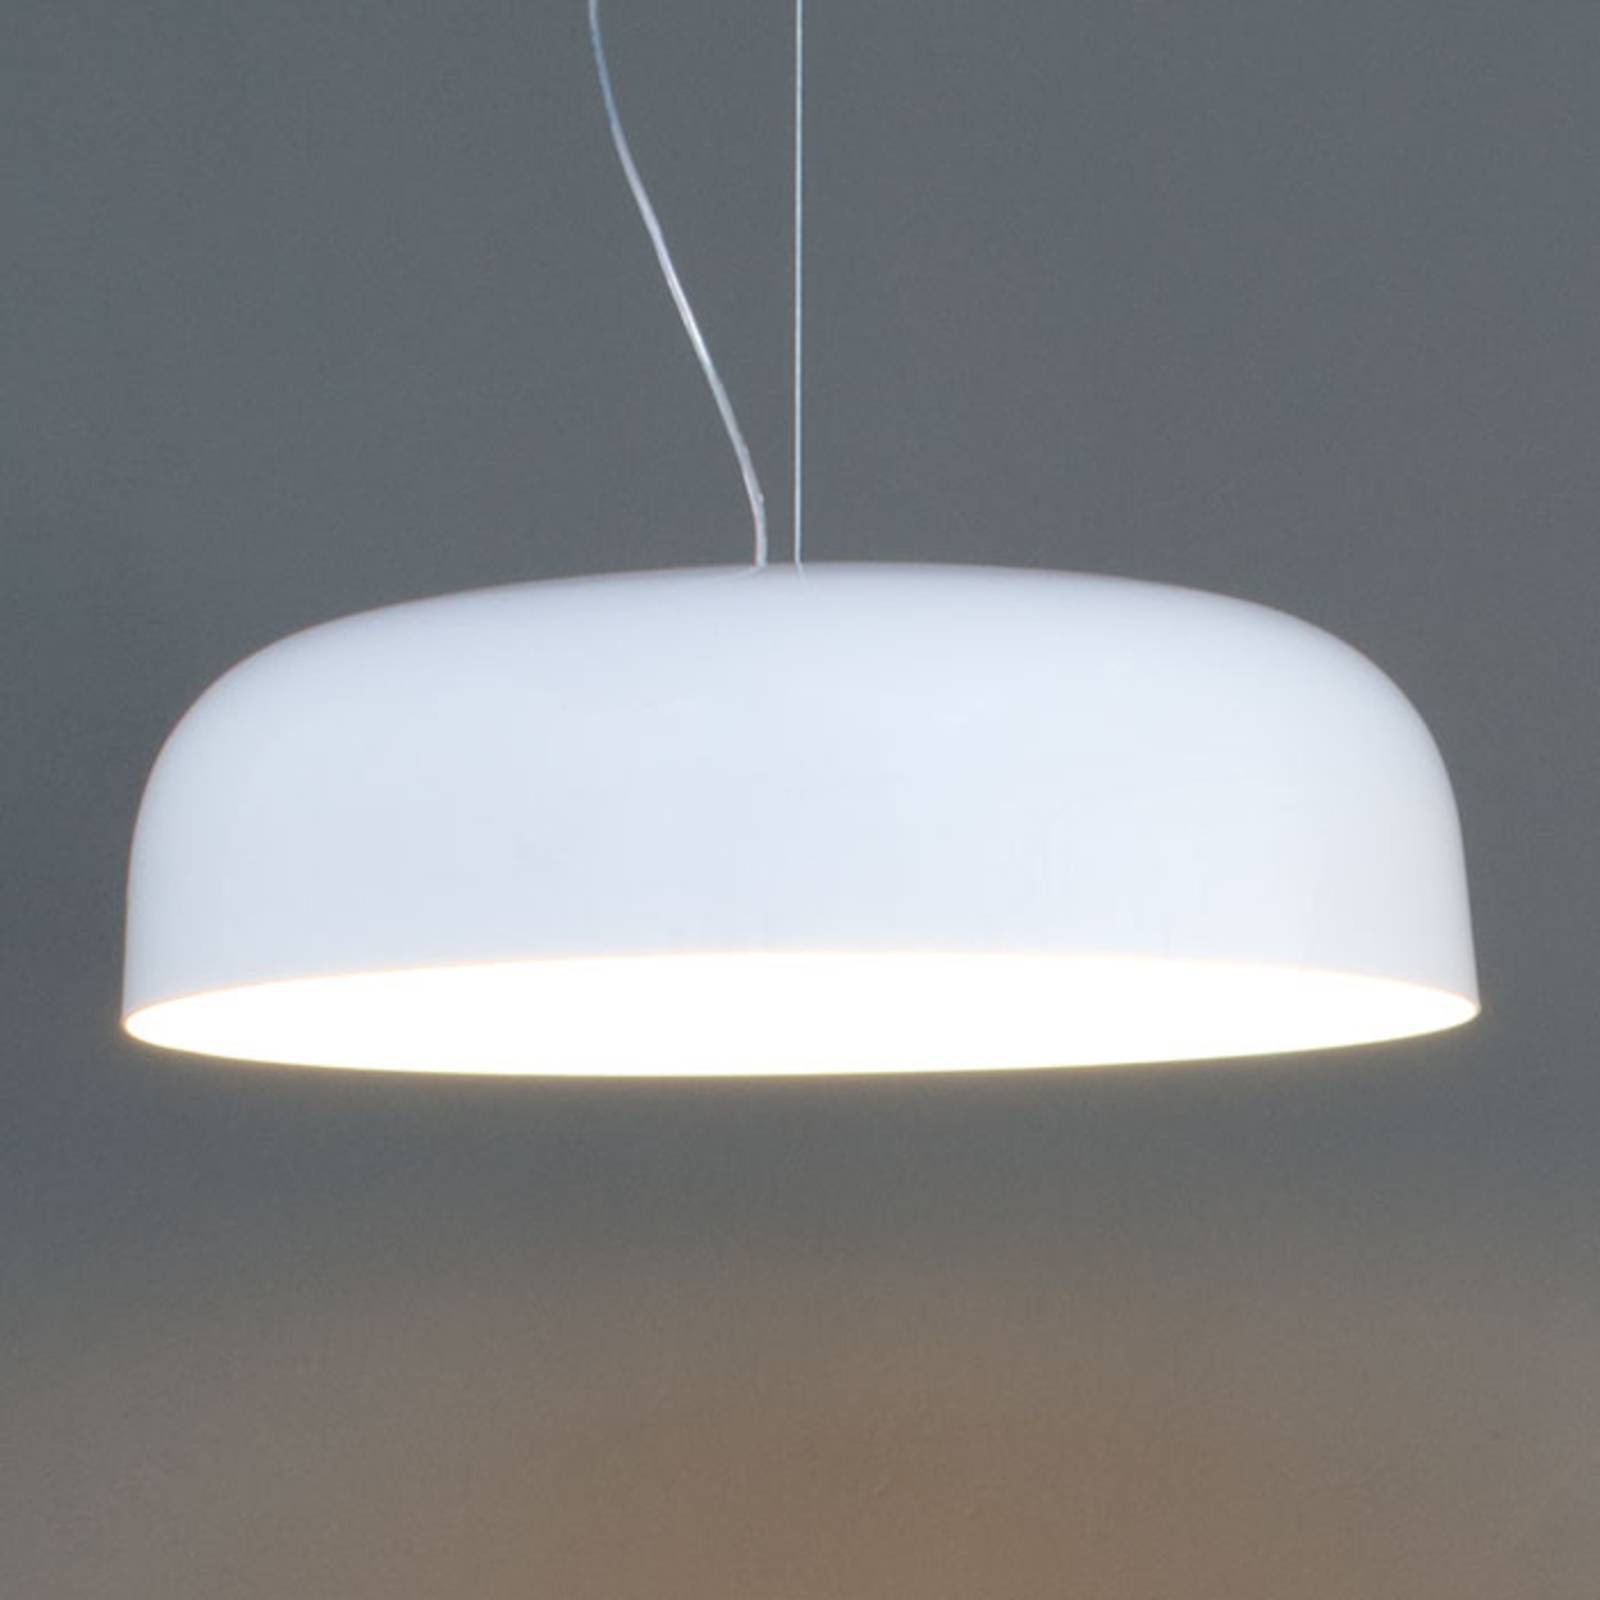 Szykowna lampa wisząca CANOPY, 60 cm, biała